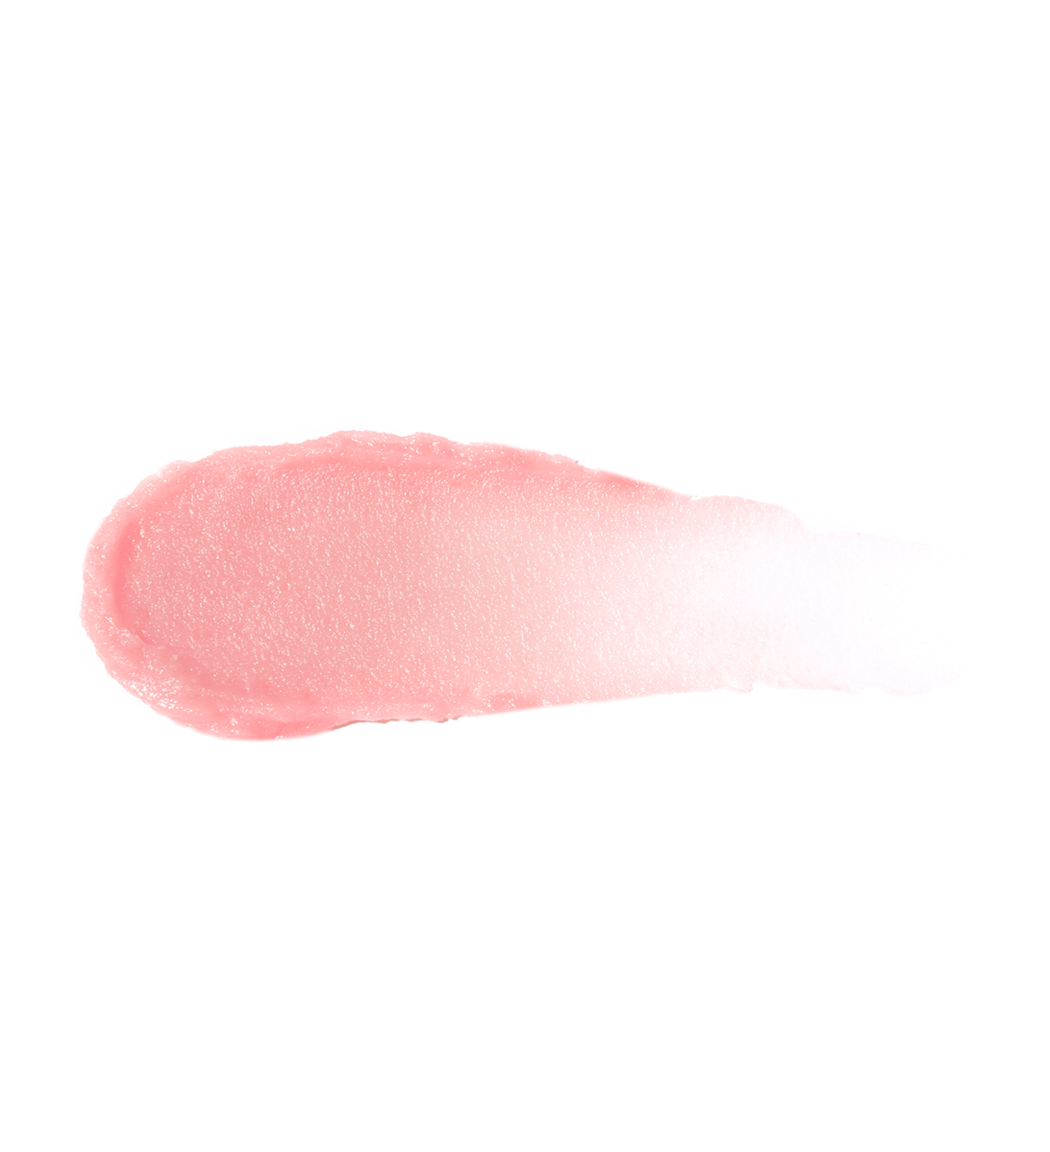 Бальзам-тинт для губ Luxvisage Tint care pH formula Цвет и увлажнение тон 01 3.9 г - фото 2